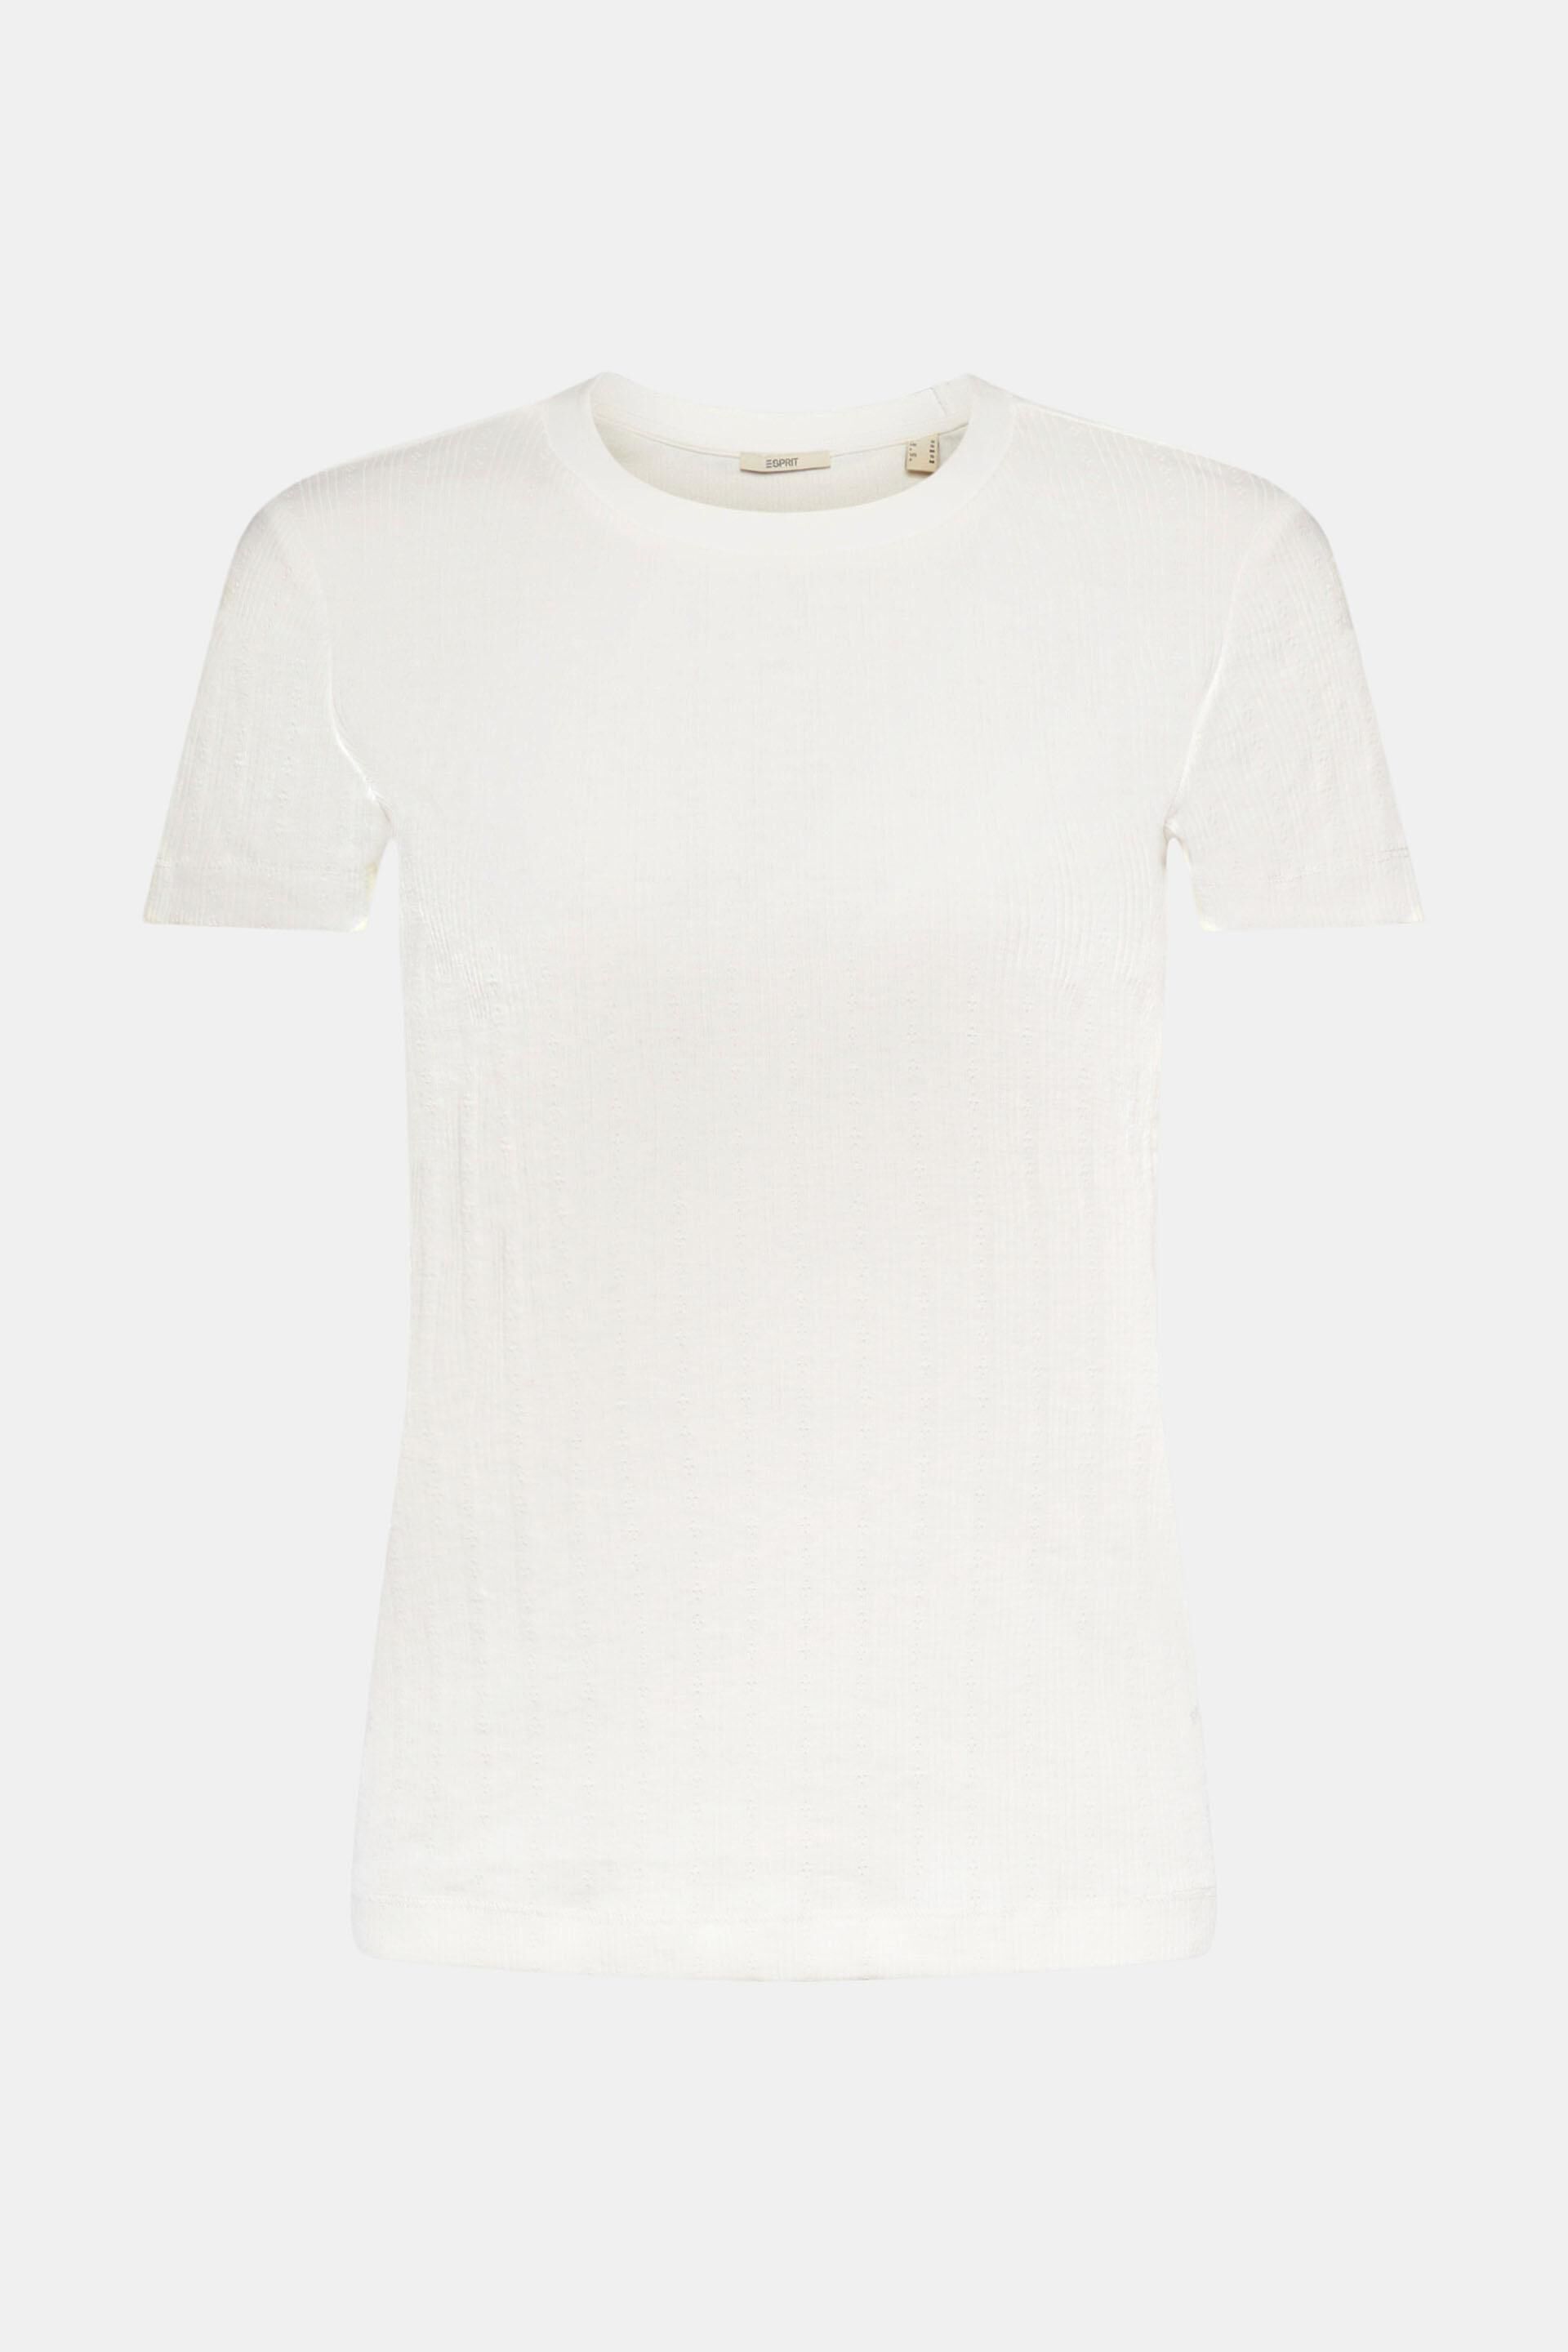 Pointelle t-shirt at our online shop - ESPRIT